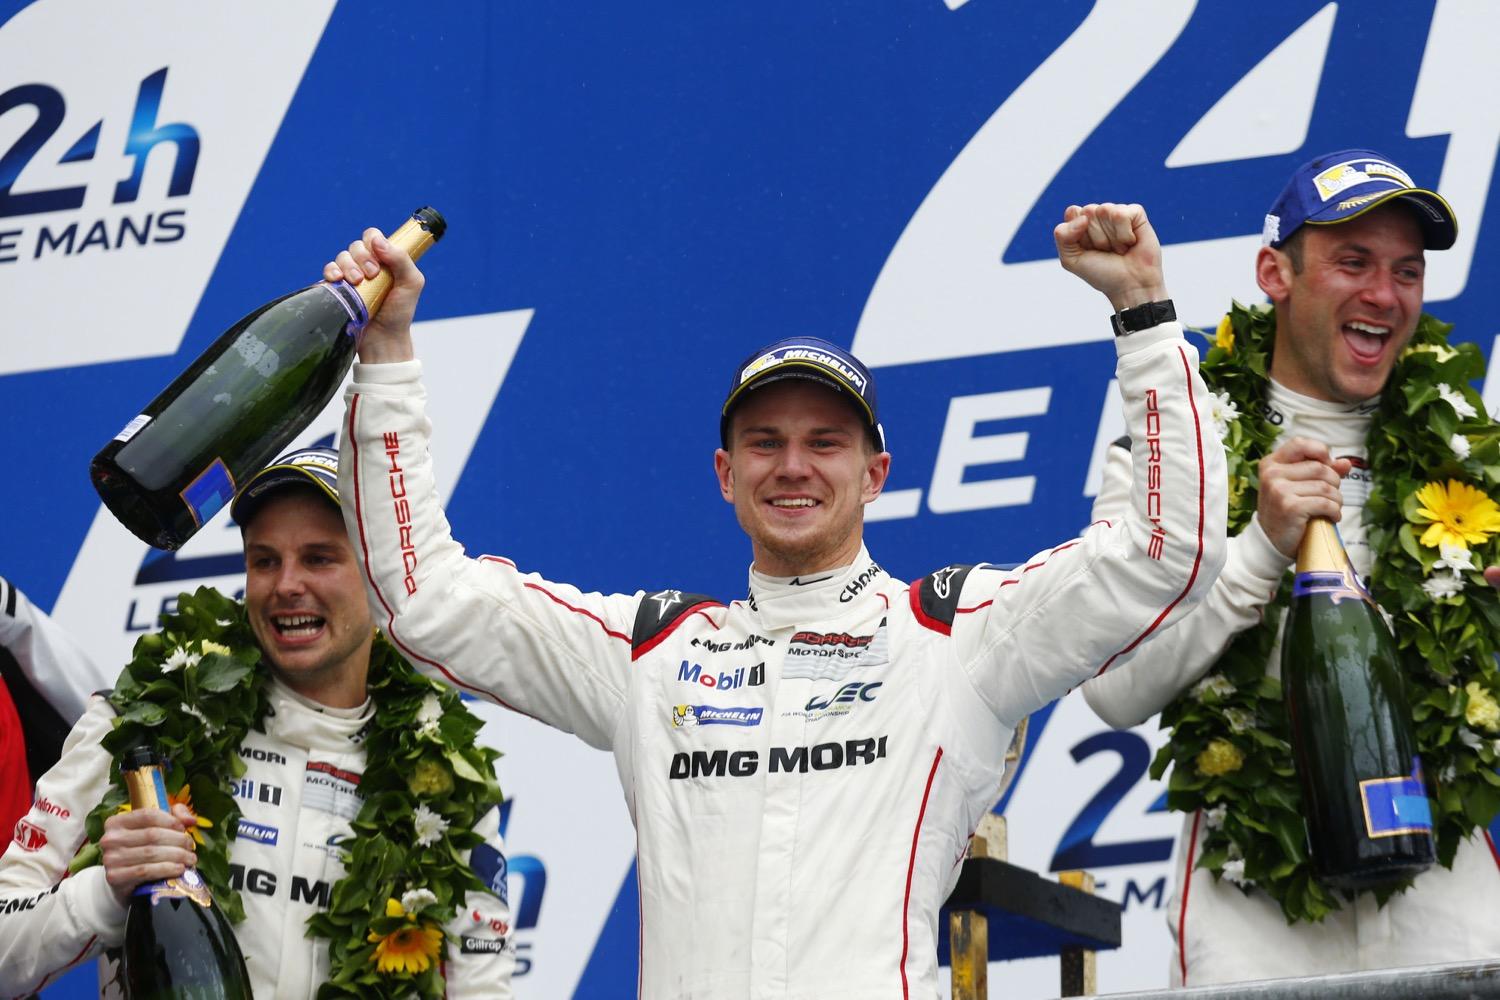 Porsche wins 2015 24 Hours of Le Mans